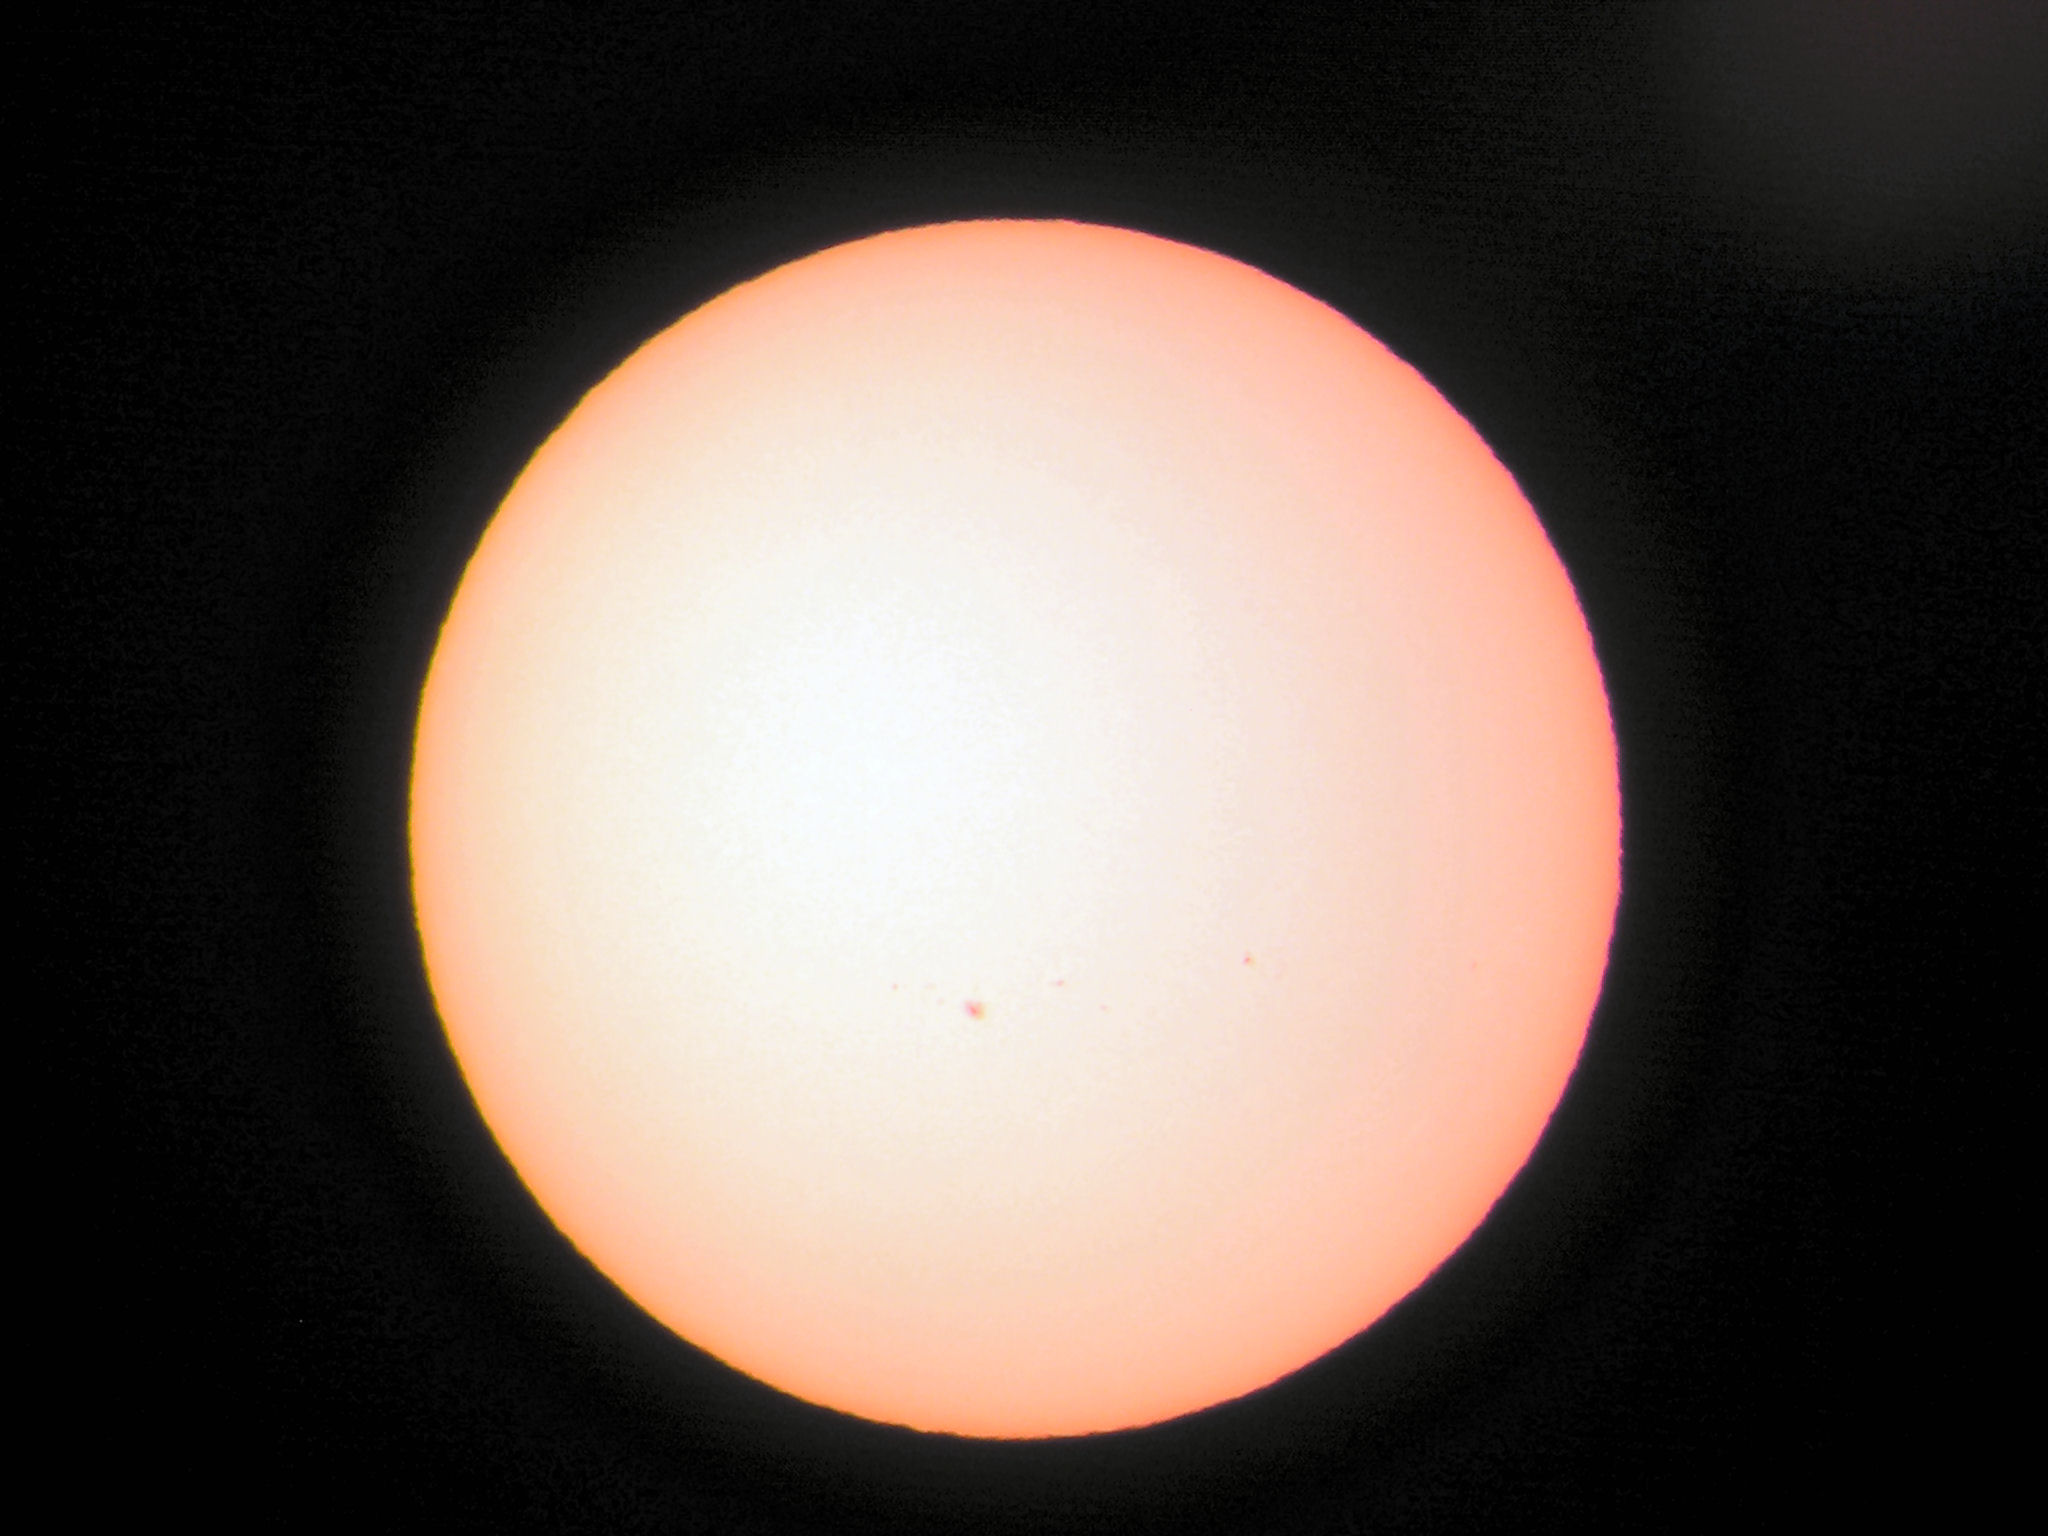 sunspots 10/18/04 image